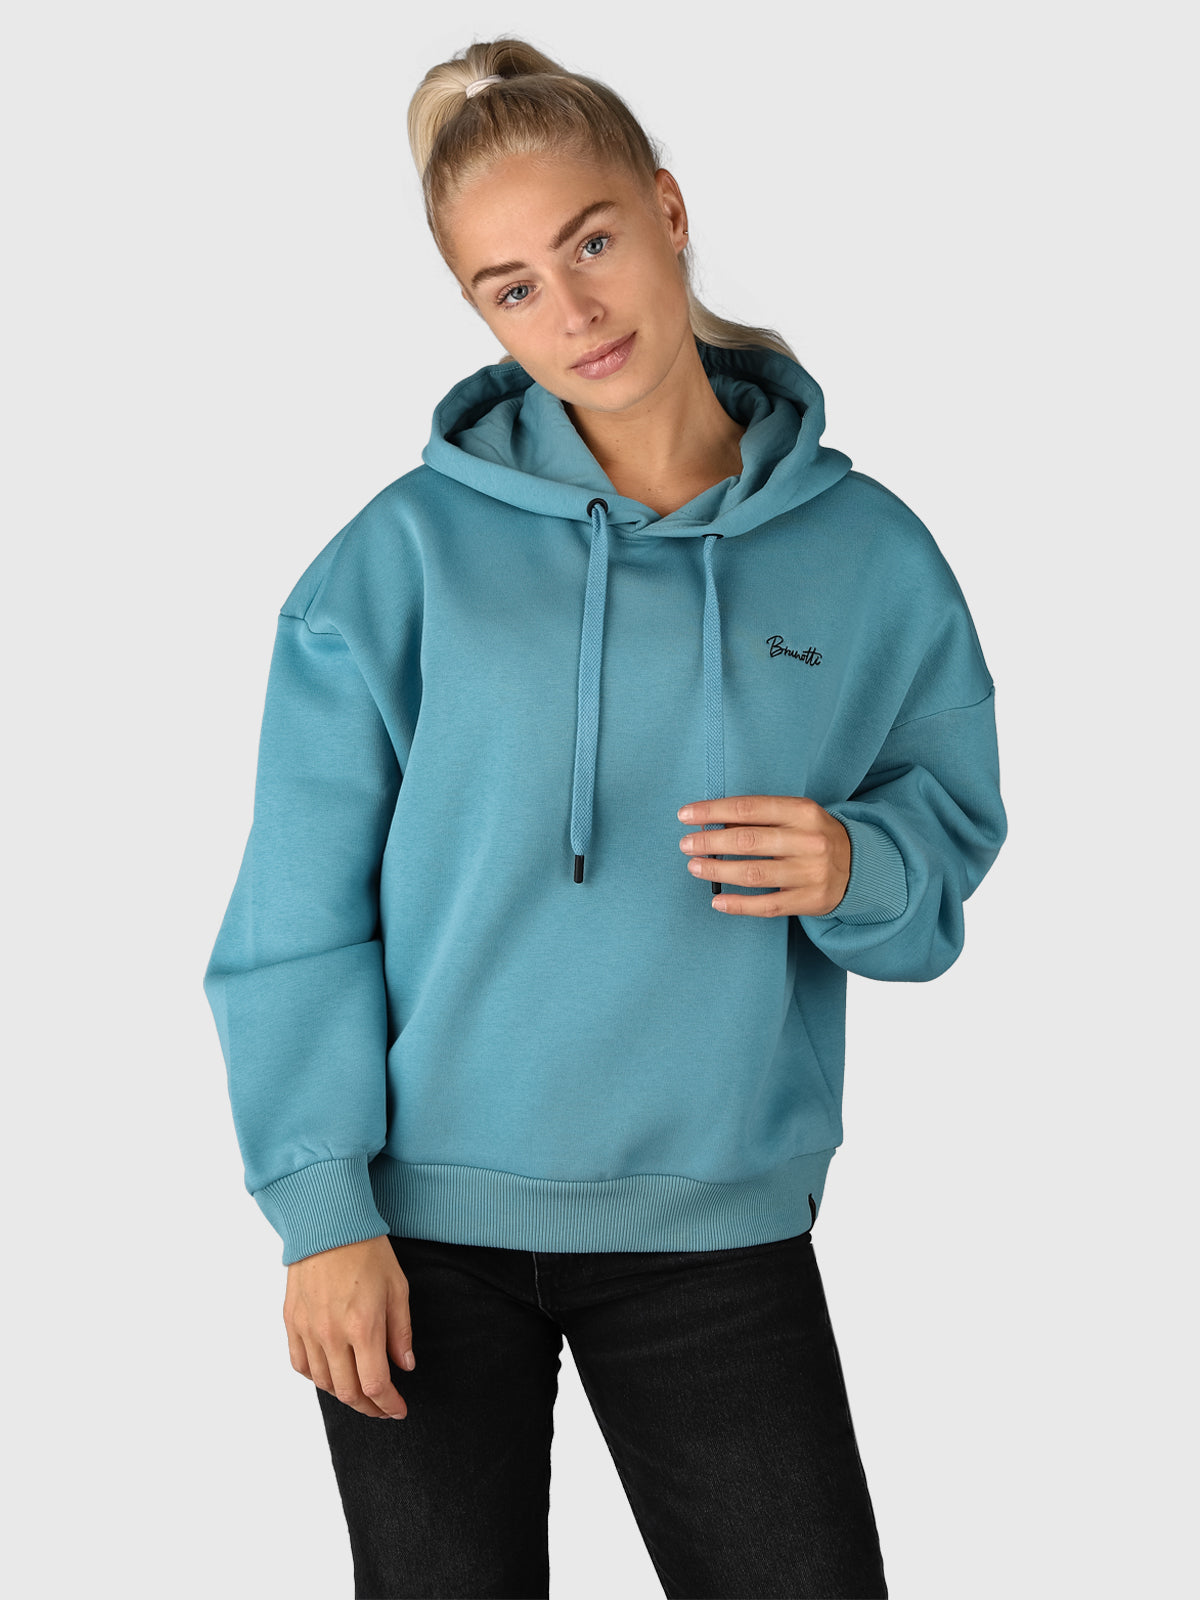 Daphne-R Dames Sweater | Blauw